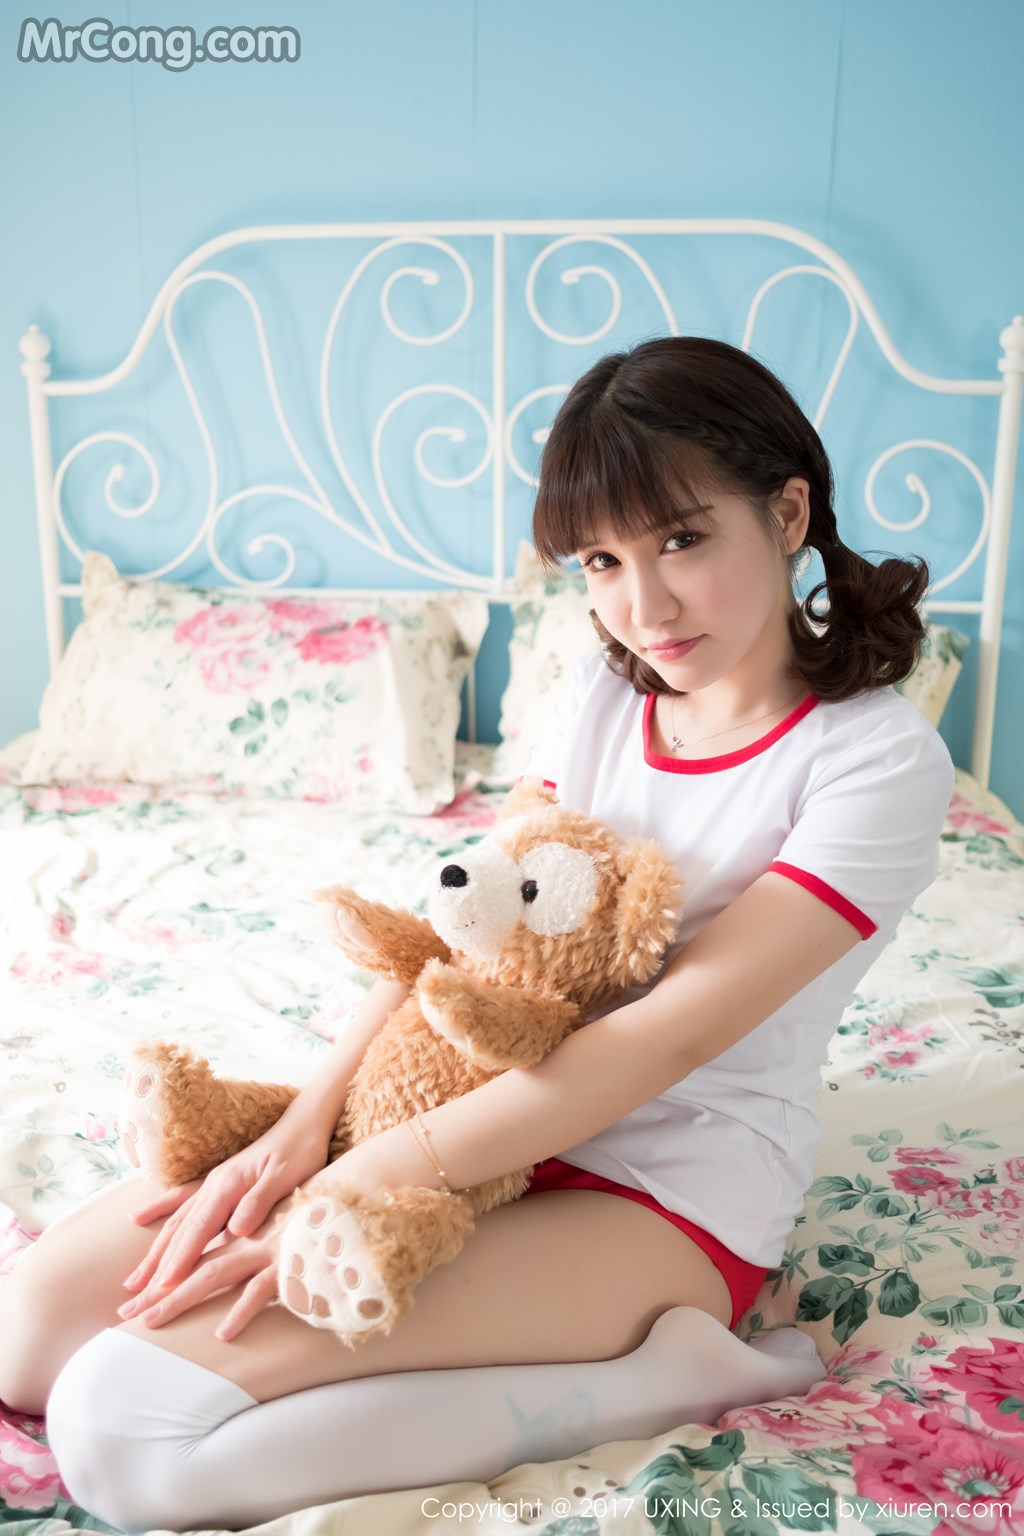 UXING Vol.040: Model Aojiao Meng Meng (K8 傲 娇 萌萌 Vivian) (61 photos) photo 2-1